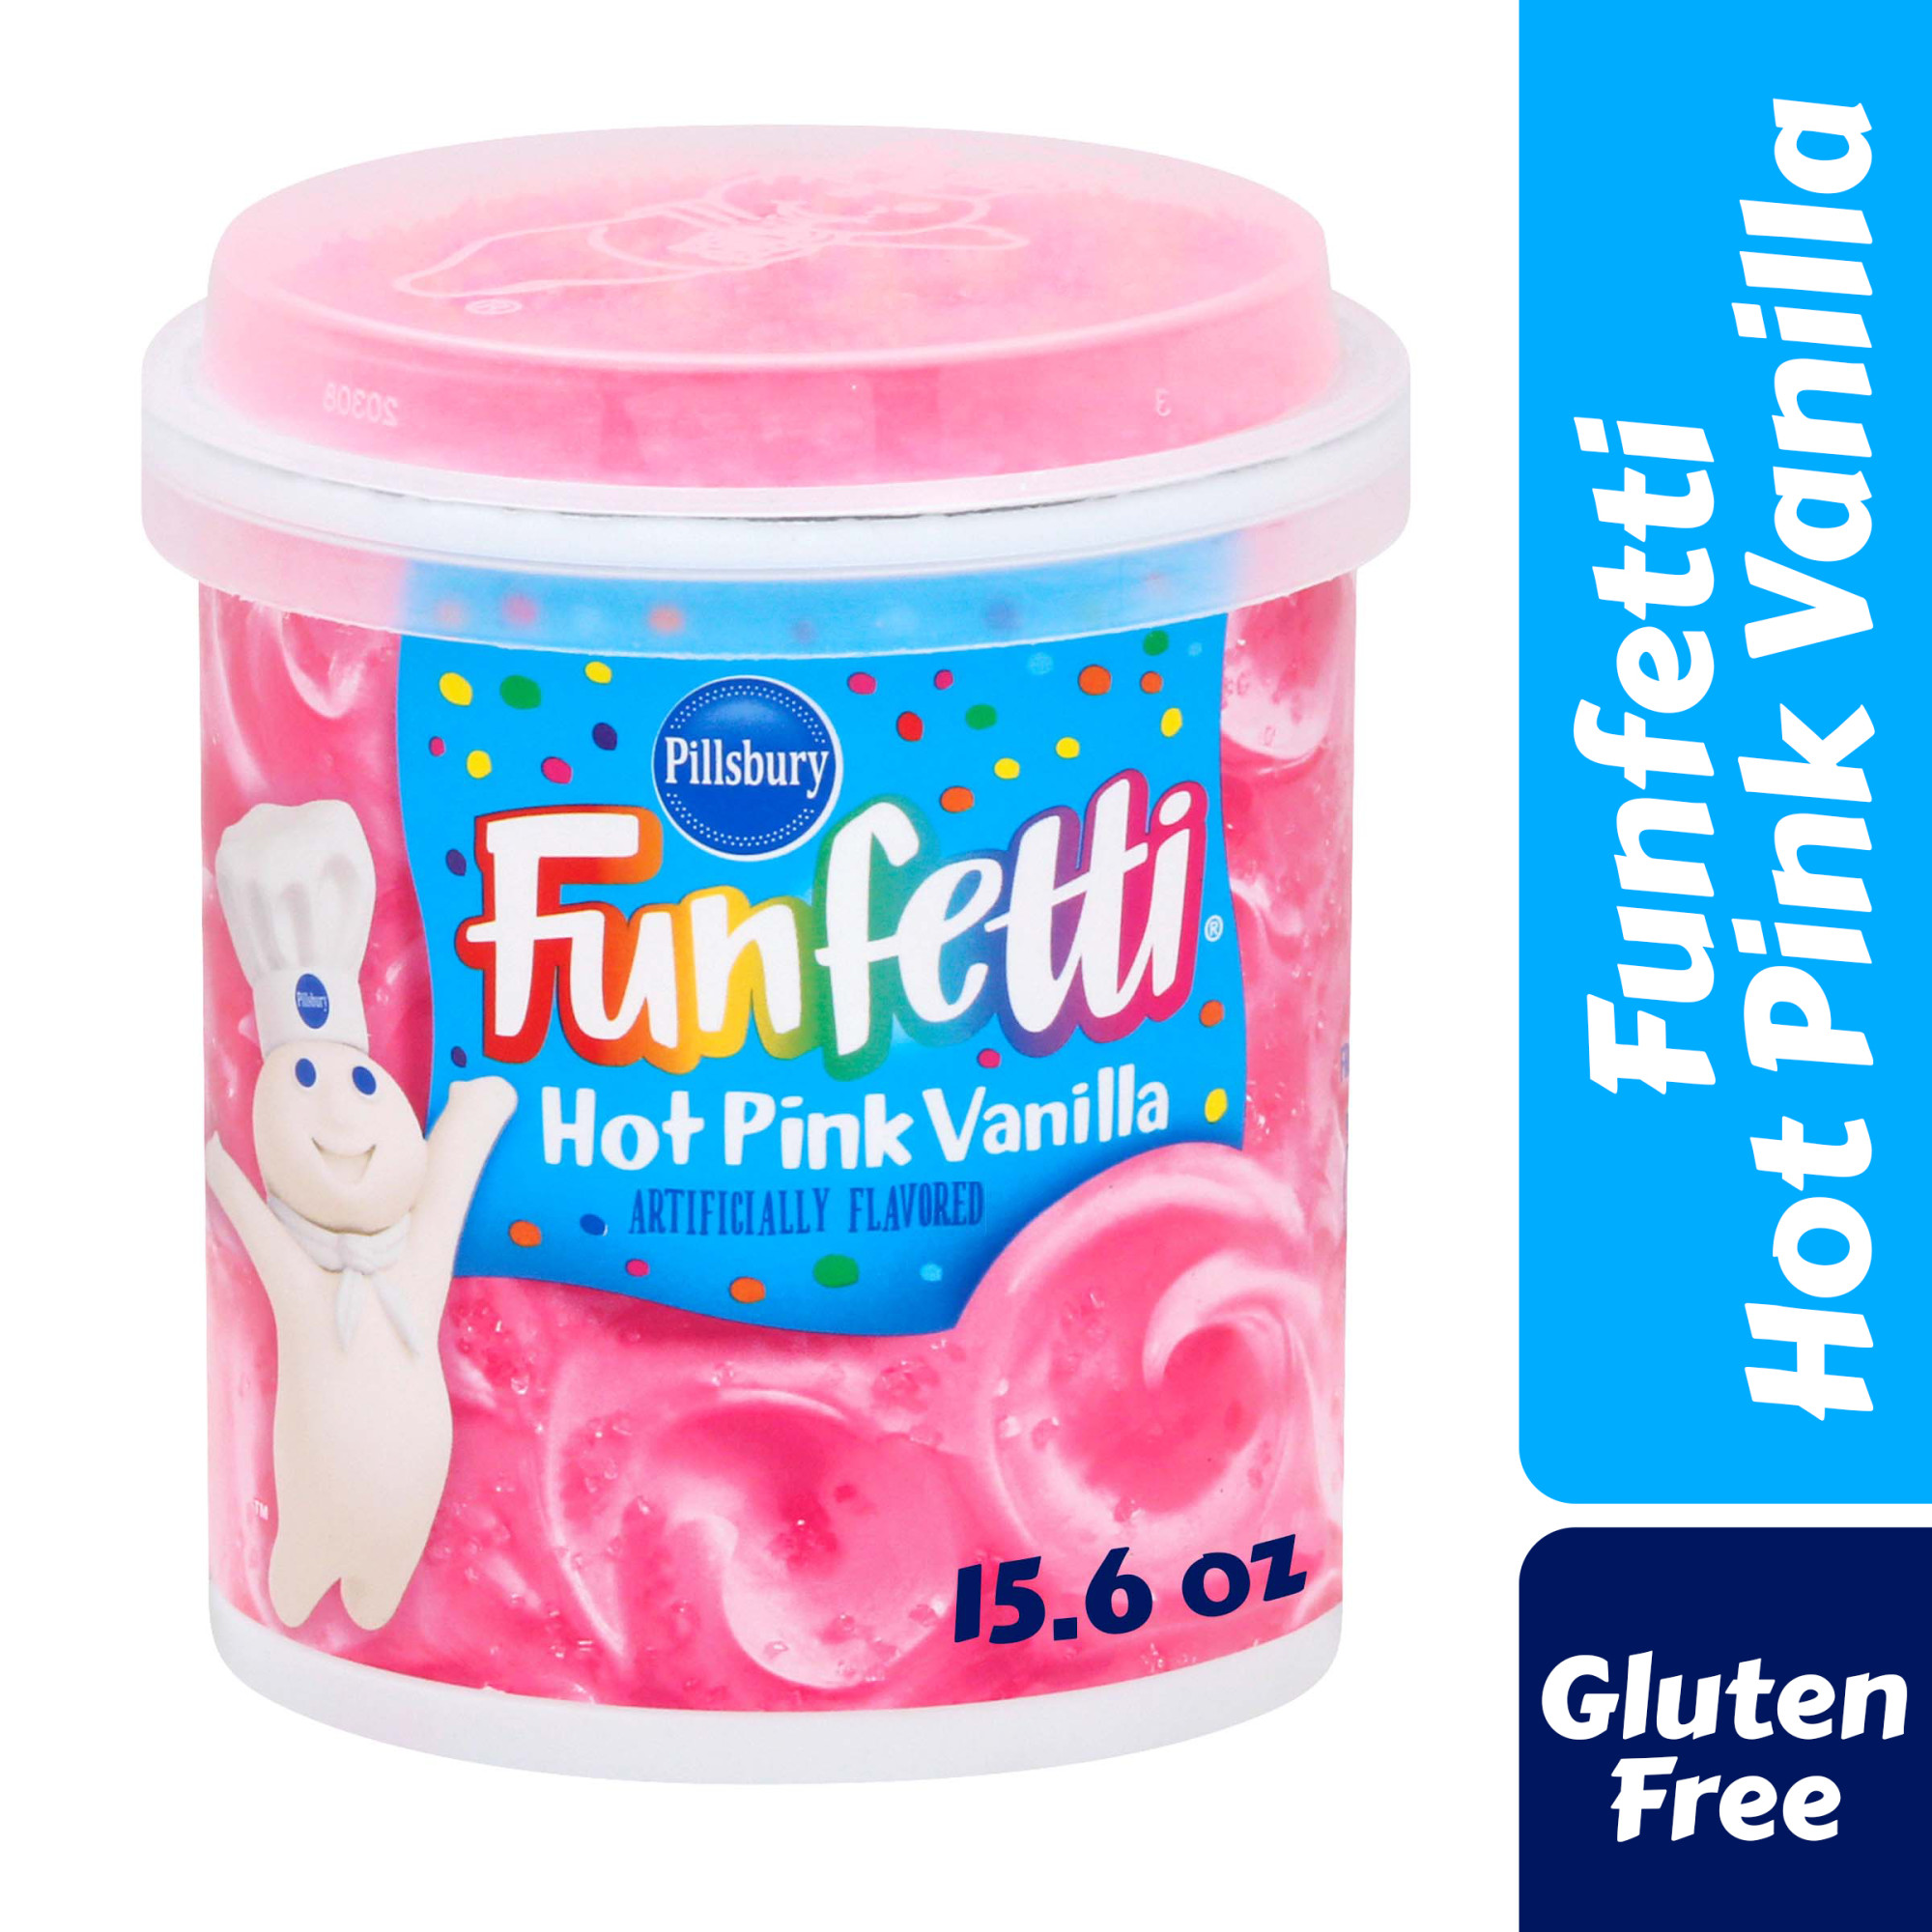 Pillsbury Funfetti Hot Pink Vanilla Frosting, 15.6 Oz Tub - image 2 of 7